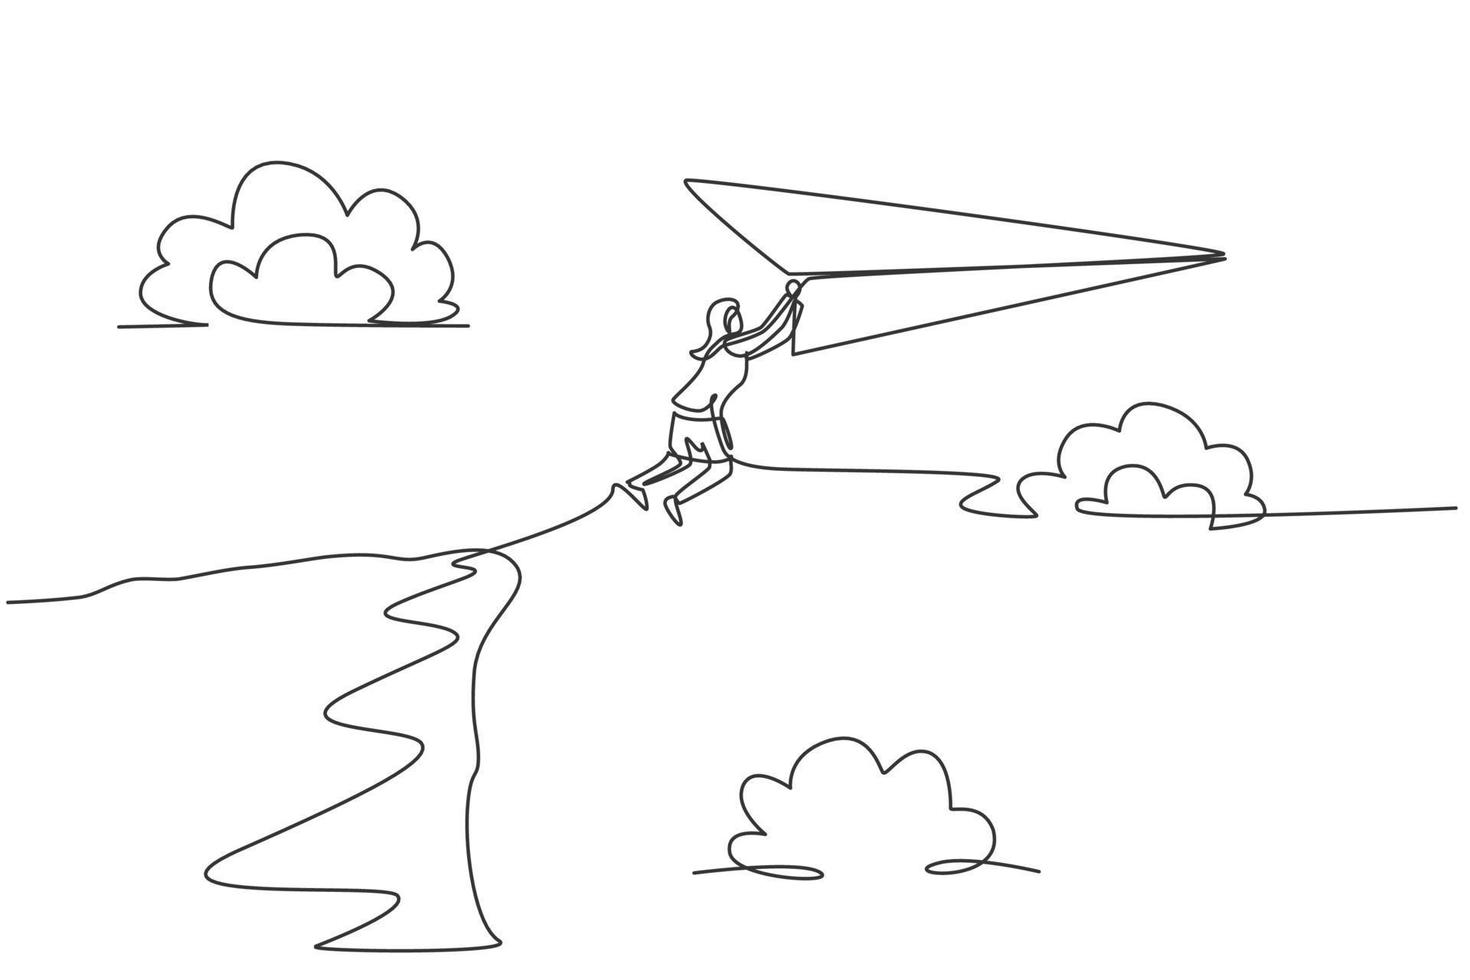 dessin continu d'une ligne une jeune travailleuse saute à un avion en papier volant depuis le sommet de la falaise. chef d'entreprise de succès. concept minimaliste de métaphore. illustration graphique de vecteur de conception de dessin à une seule ligne